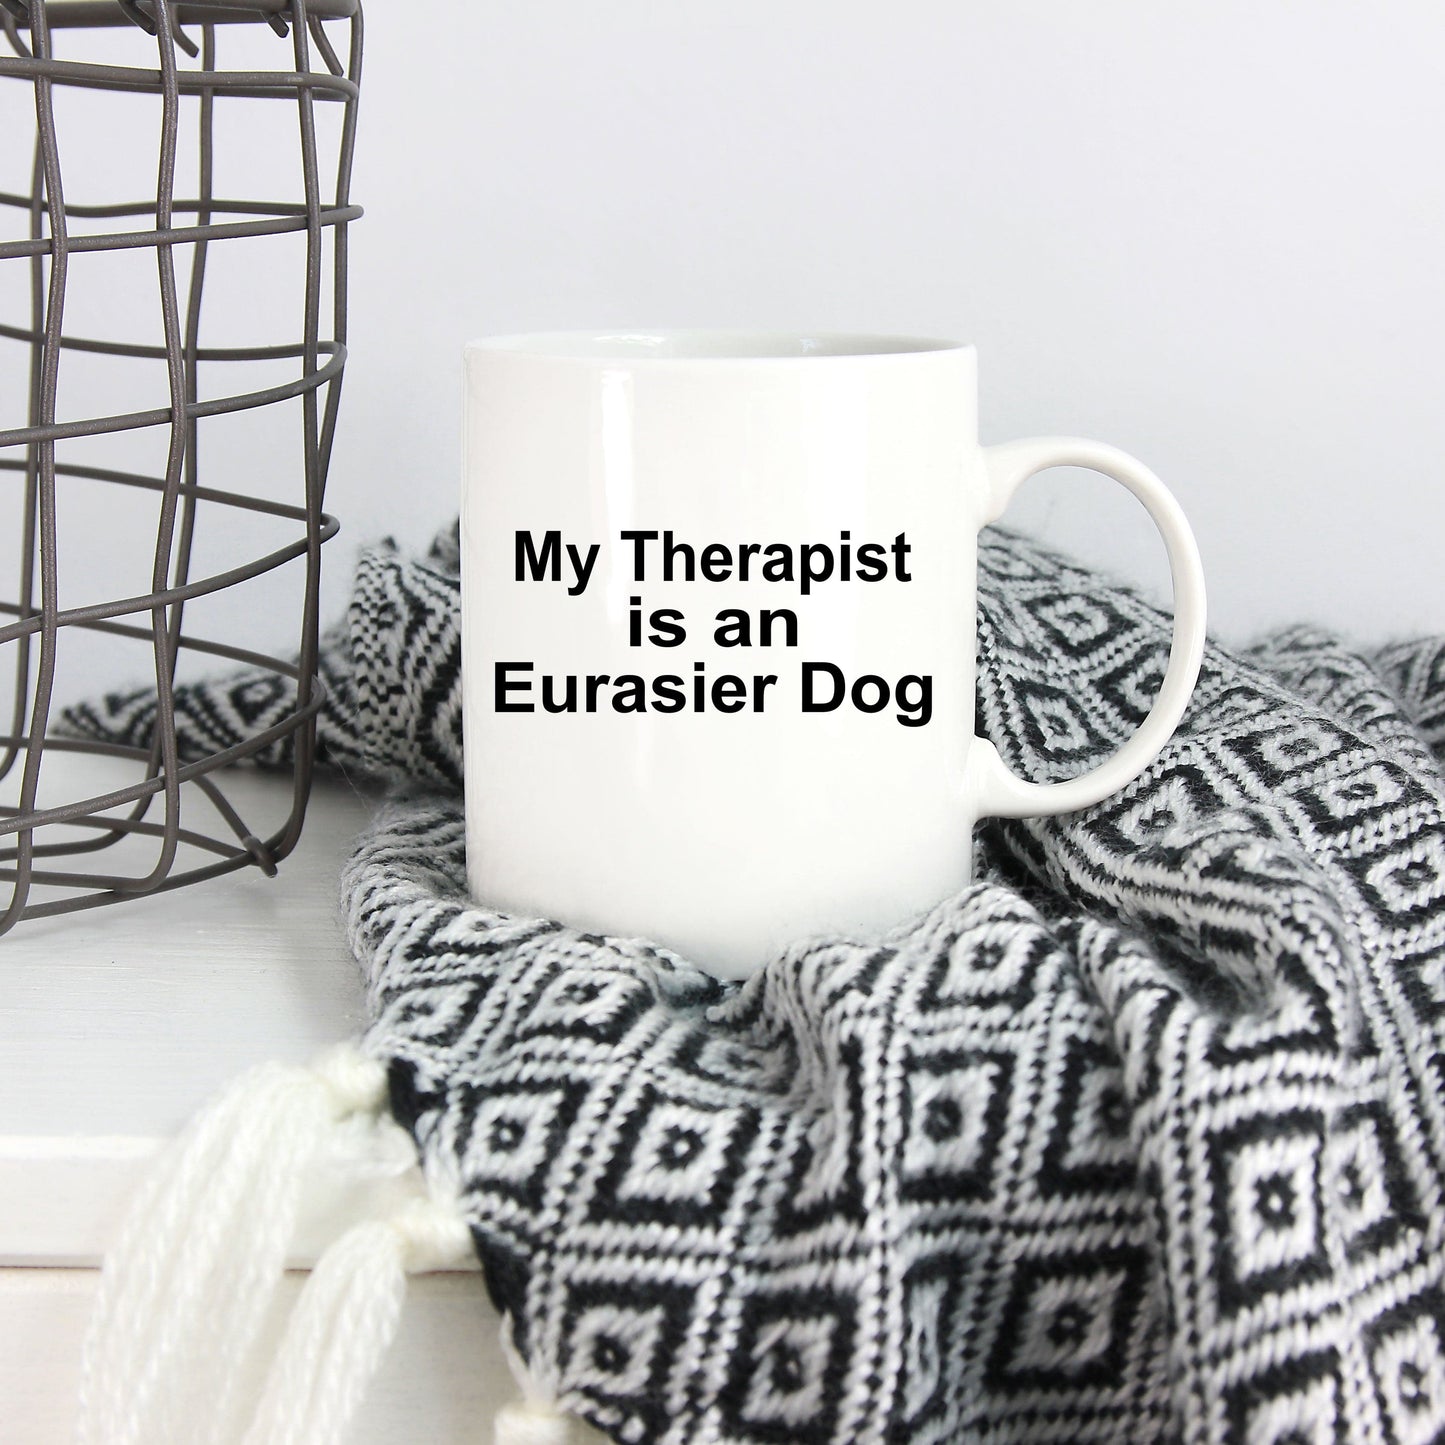 Eurasier Dog Owner Lover Funny Gift Therapist White Ceramic Coffee Mug